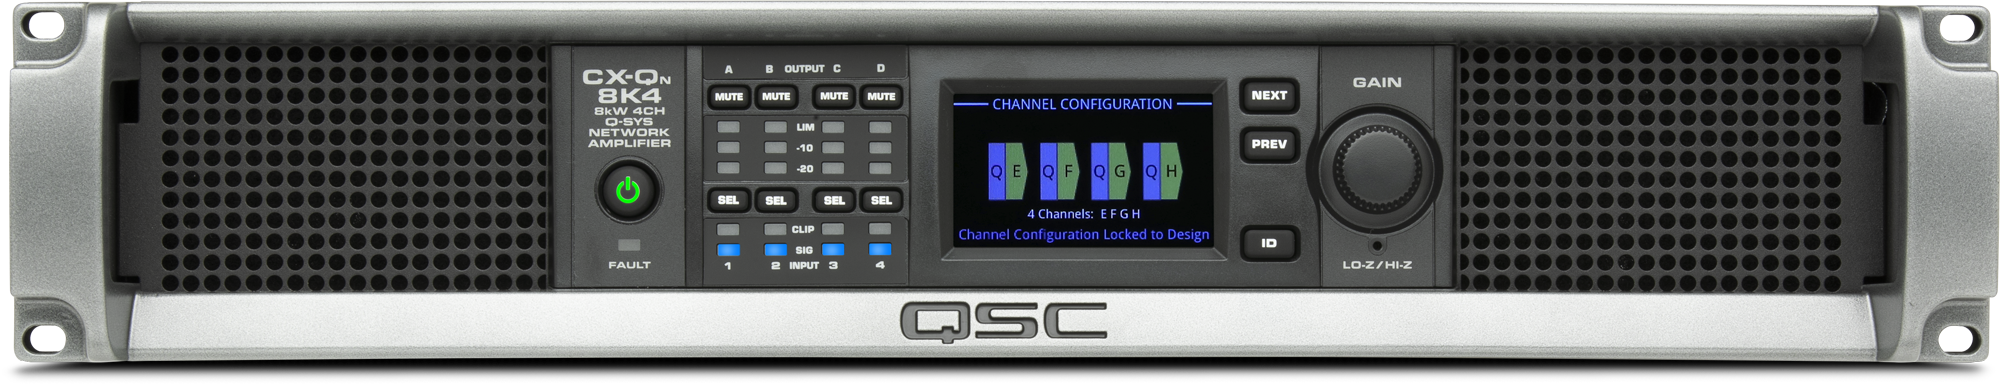 CX-Qn 8K8 / 8-канальный усилитель 8 х 1000Вт Q-SYS, Lo-Z, 70В, 100В, FlexAmp™ / QSC